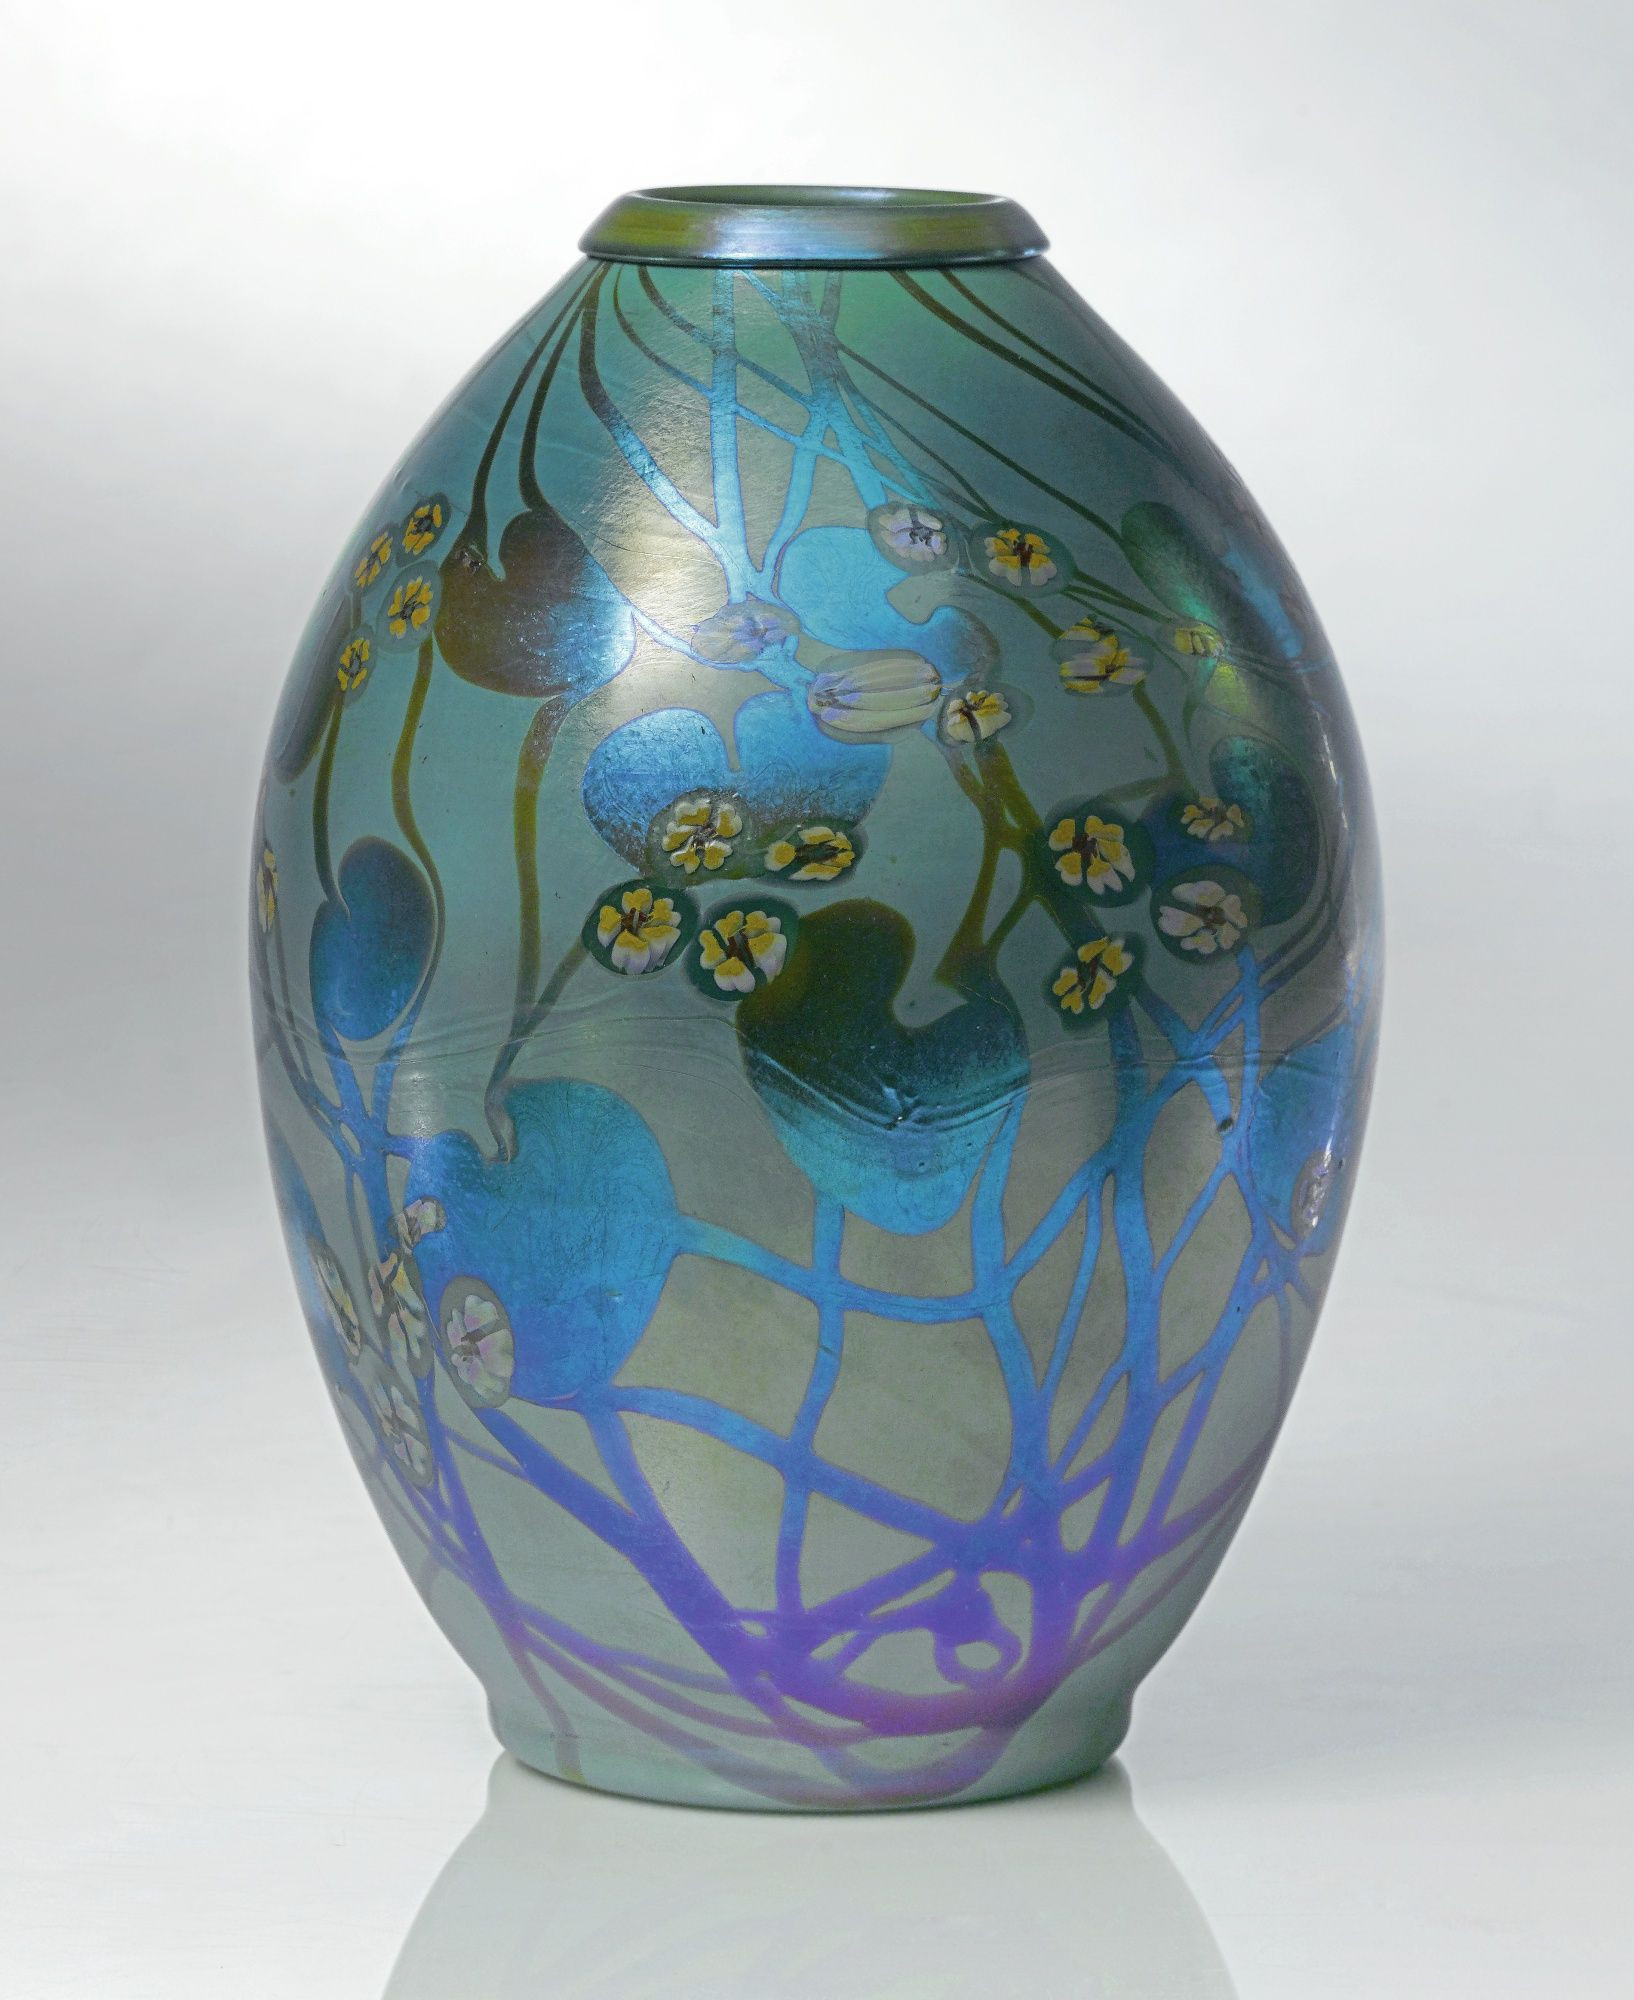 24 Elegant Azure Blue Art Glass Vase 2024 free download azure blue art glass vase of tiffany studios millefiore decorated vase tiffany glass for tiffany studios millefiore decorated vase